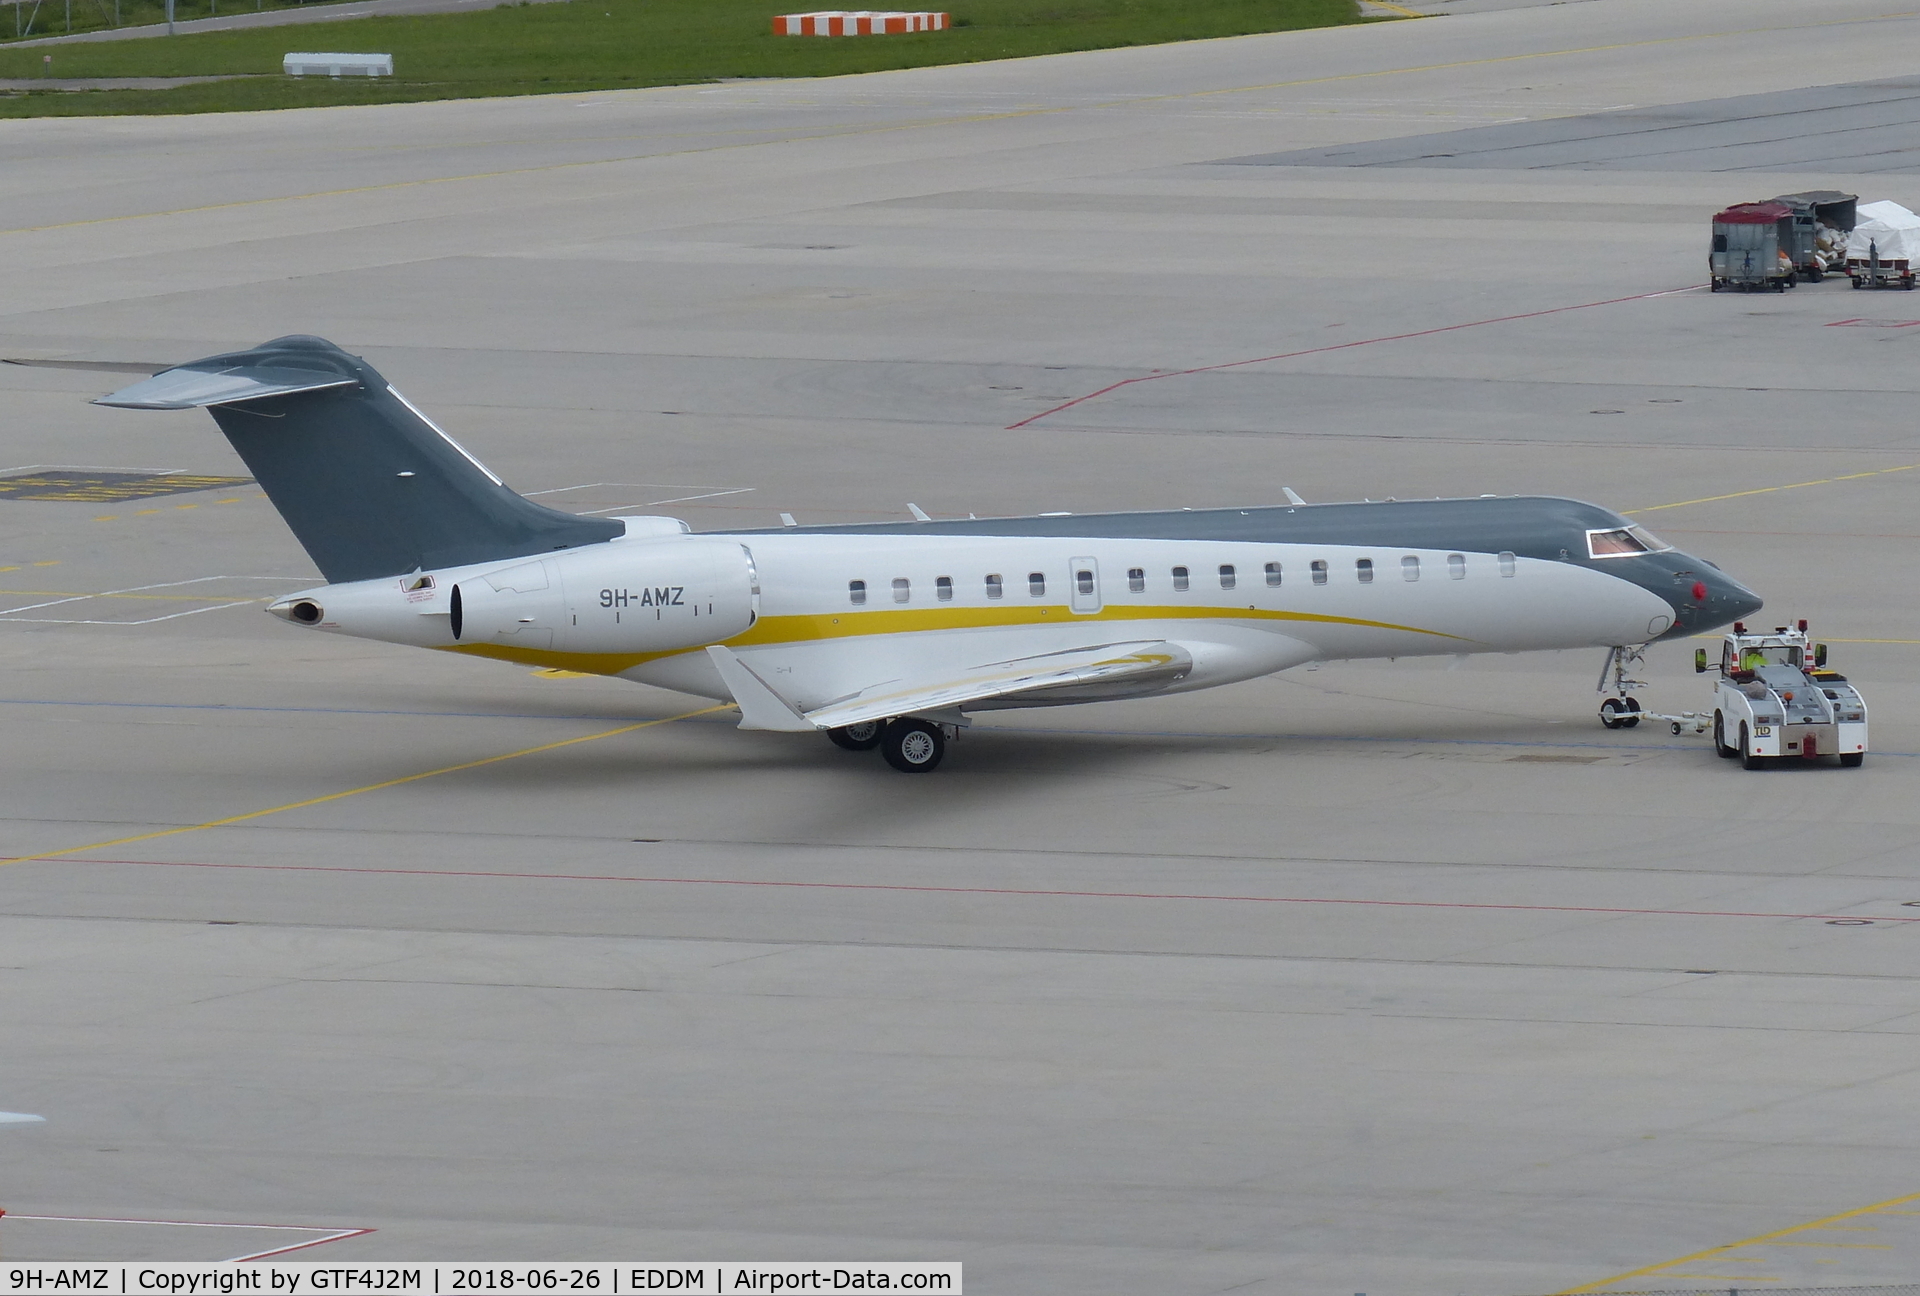 9H-AMZ, 2014 Bombardier BD-700-1A11 Global 6000 C/N 9656, 9H-AMZ  at Munich 26.6.18